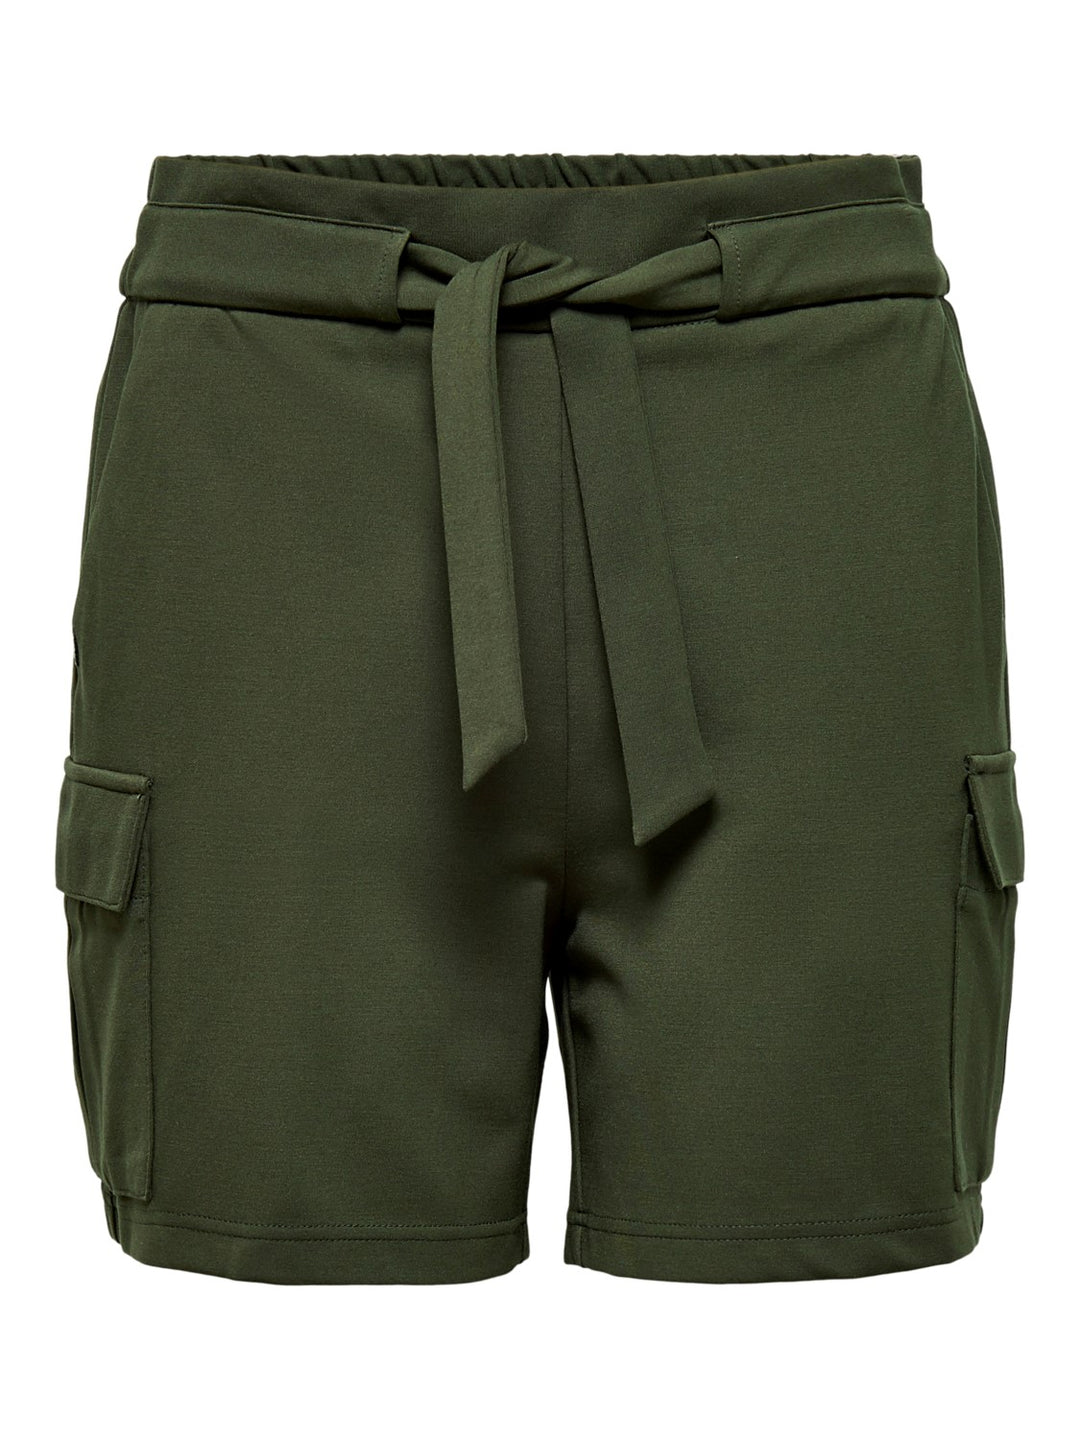 Poptrash cargo belt shorts